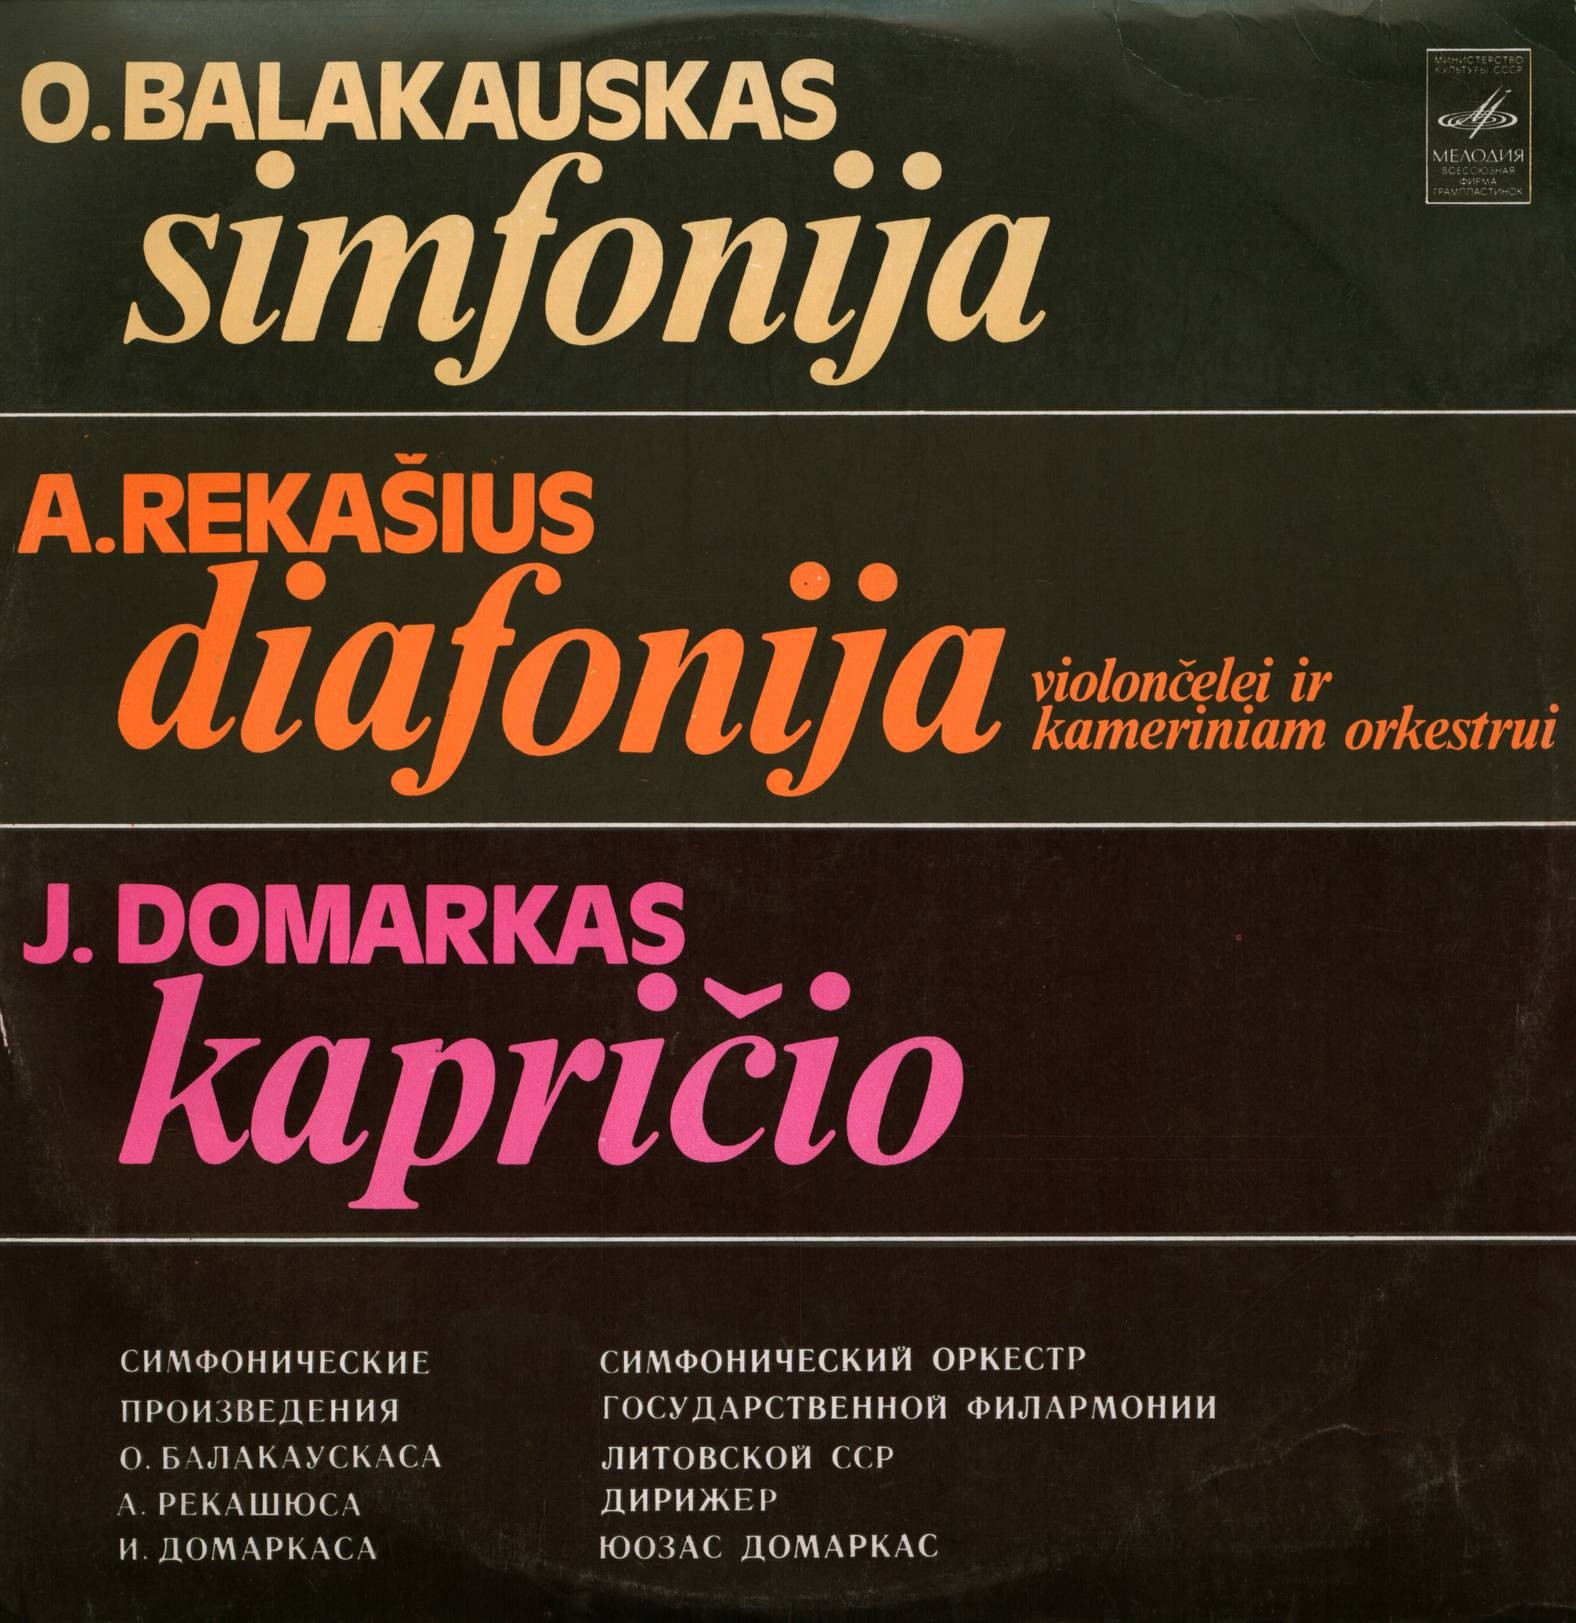 Симфонический оркестр государственной филармонии Литовской ССР, дирижер Юозас Домаркас